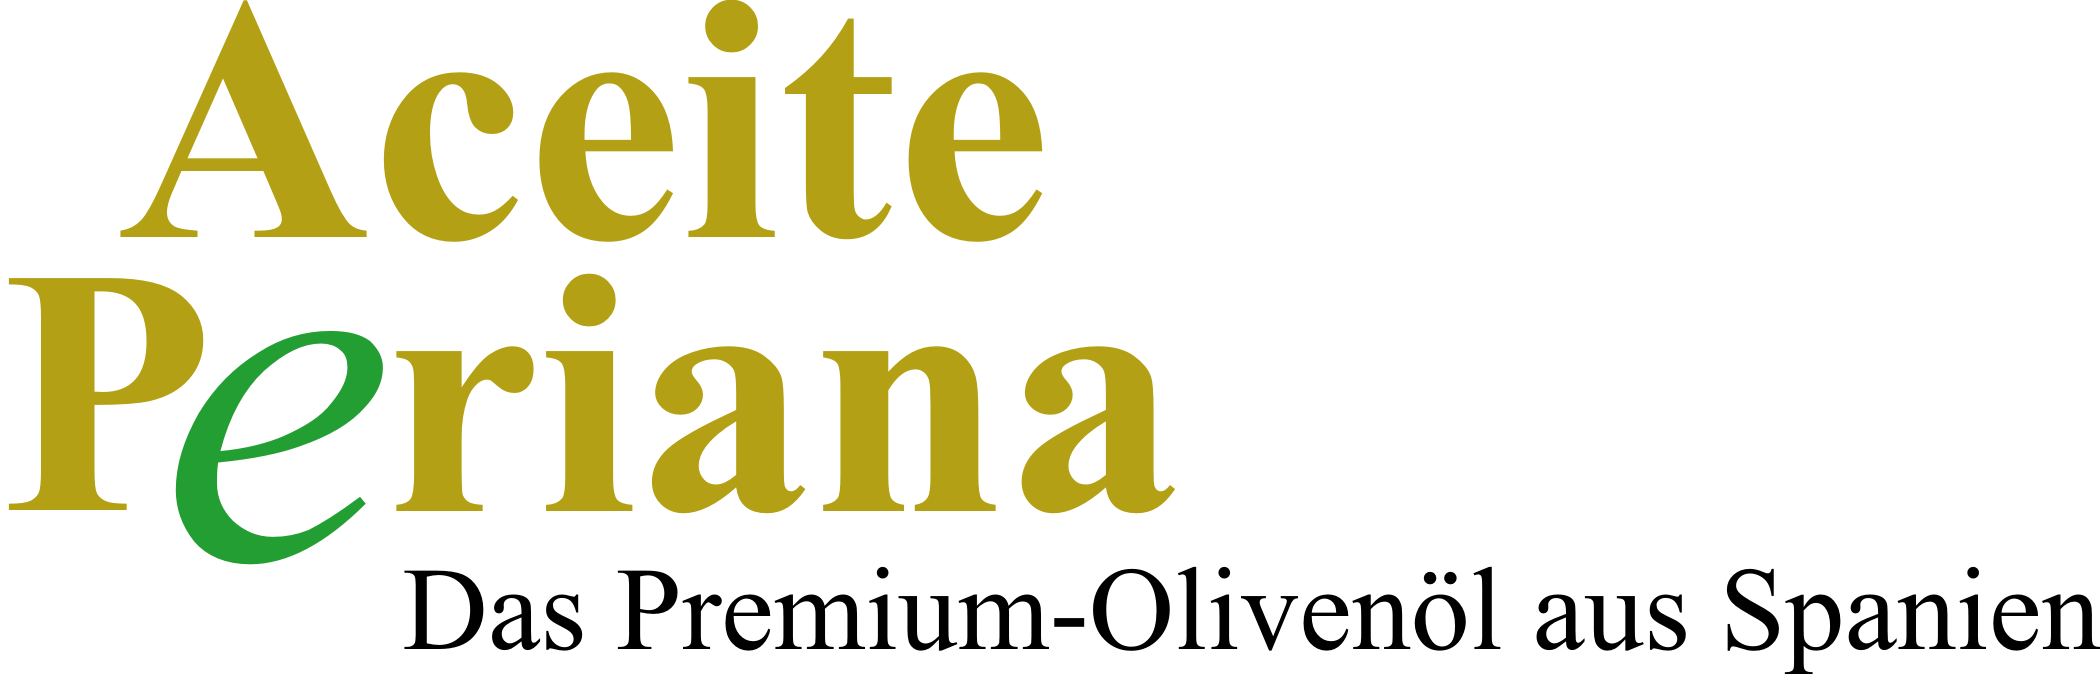 Aceite Verdial Periana - DAS Premium-Olivenöl aus Periana